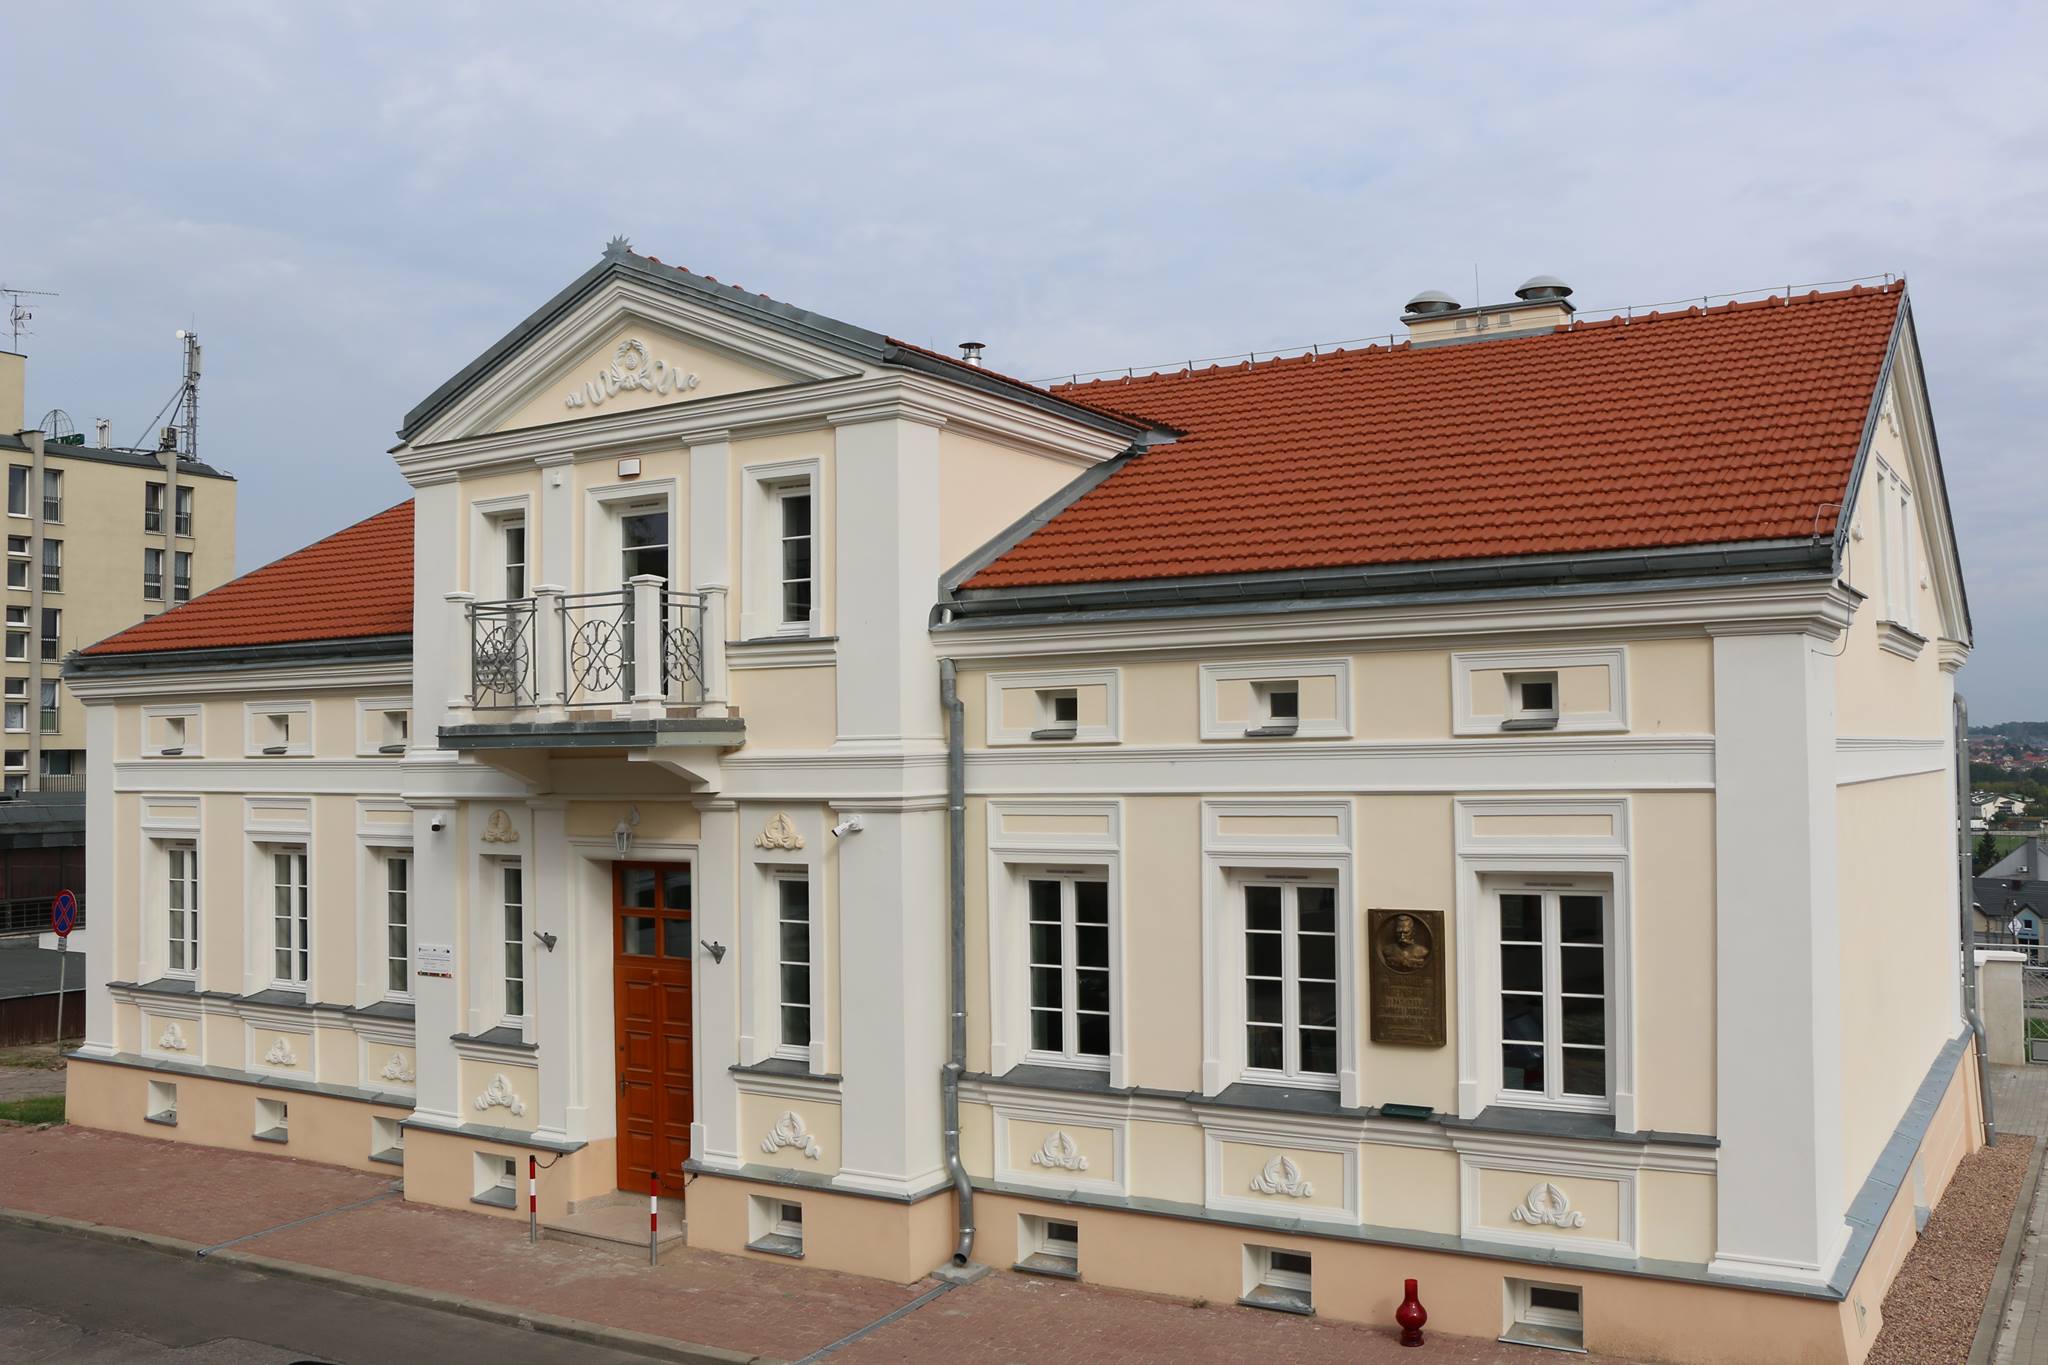 Domek Pastora - Centrum Aktywności Turystycznej i Kulturalnej w Łomży, ul. Krzywe Koło 1